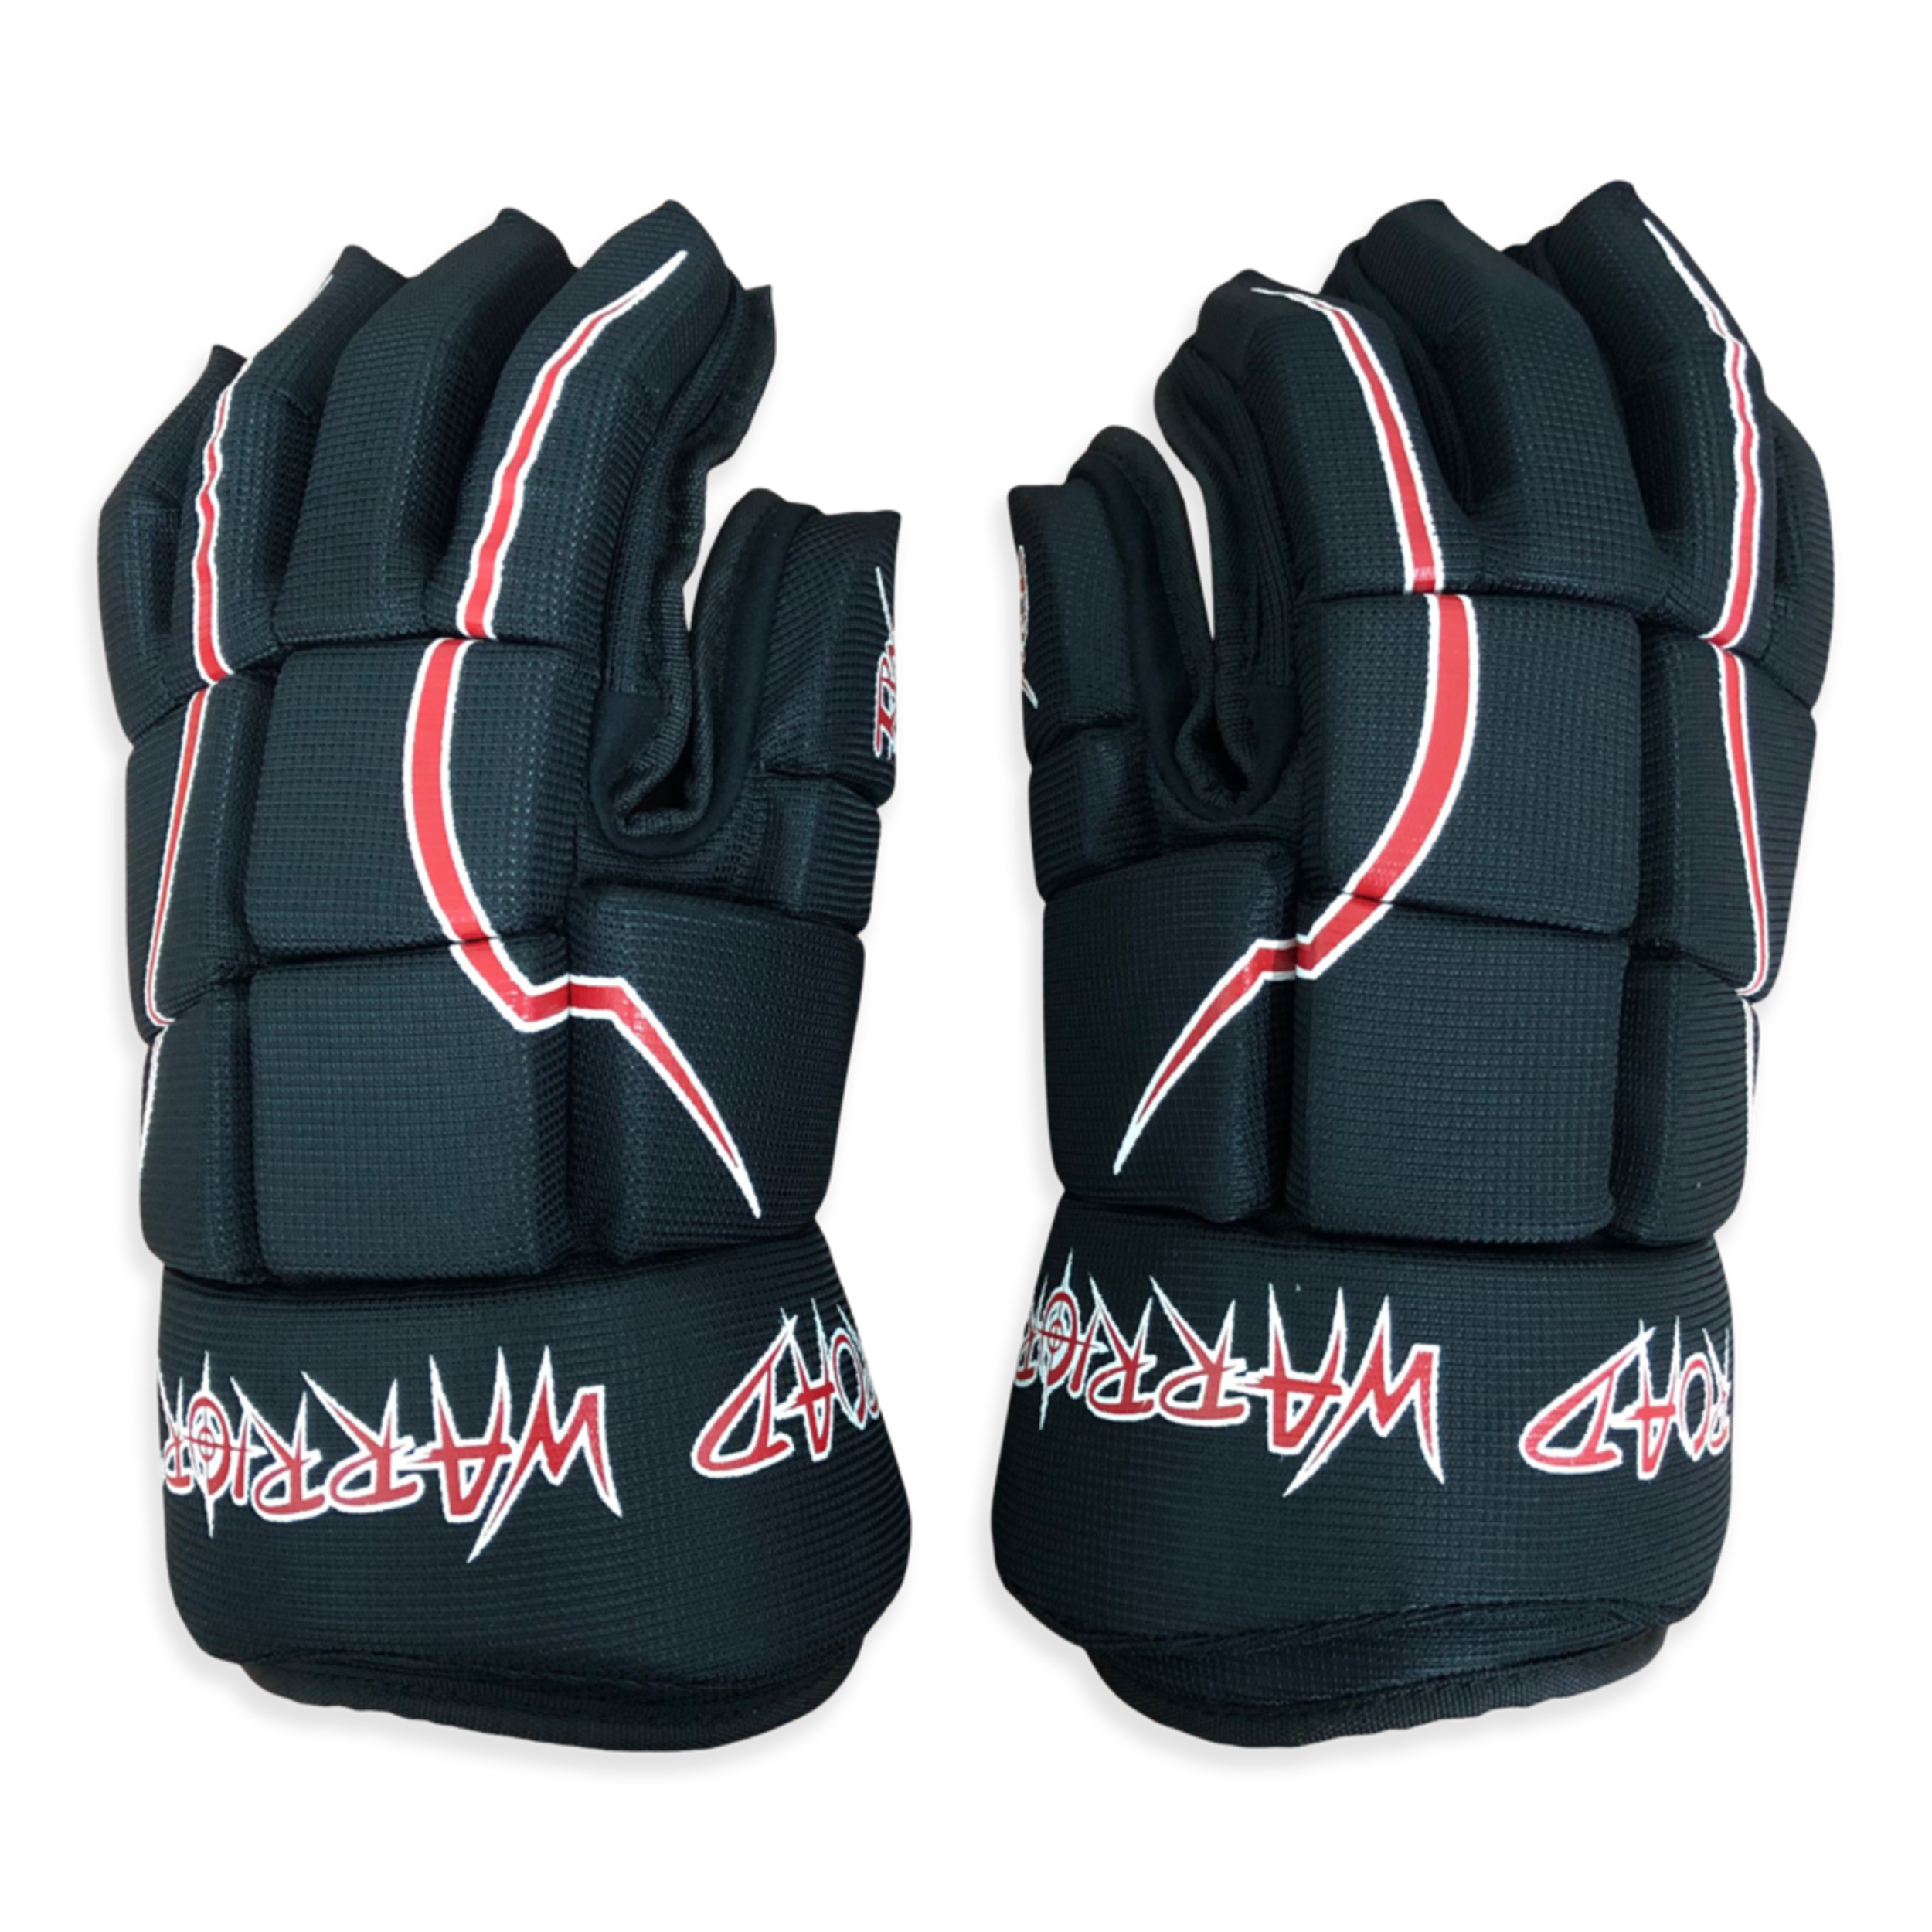 ROAD WARRIOR Pro-Style Ball Hockey Gloves